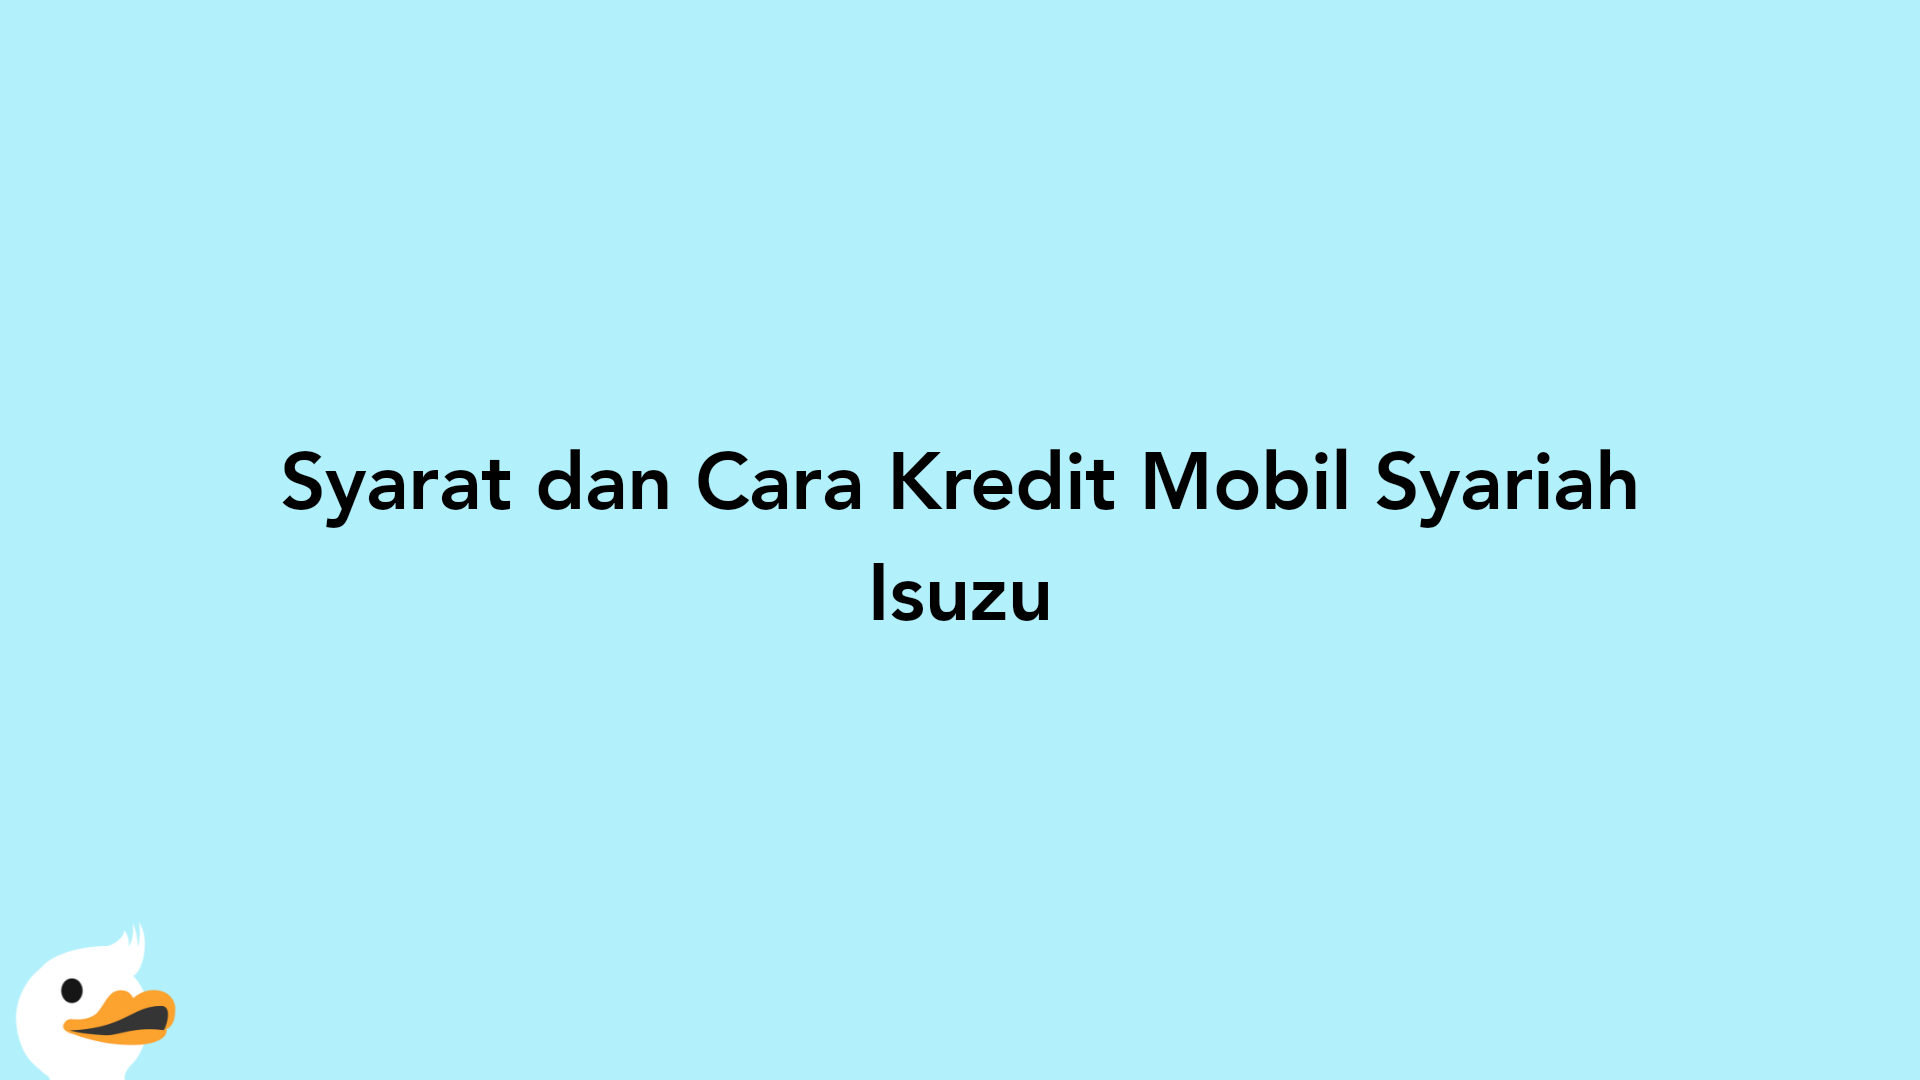 Syarat dan Cara Kredit Mobil Syariah Isuzu